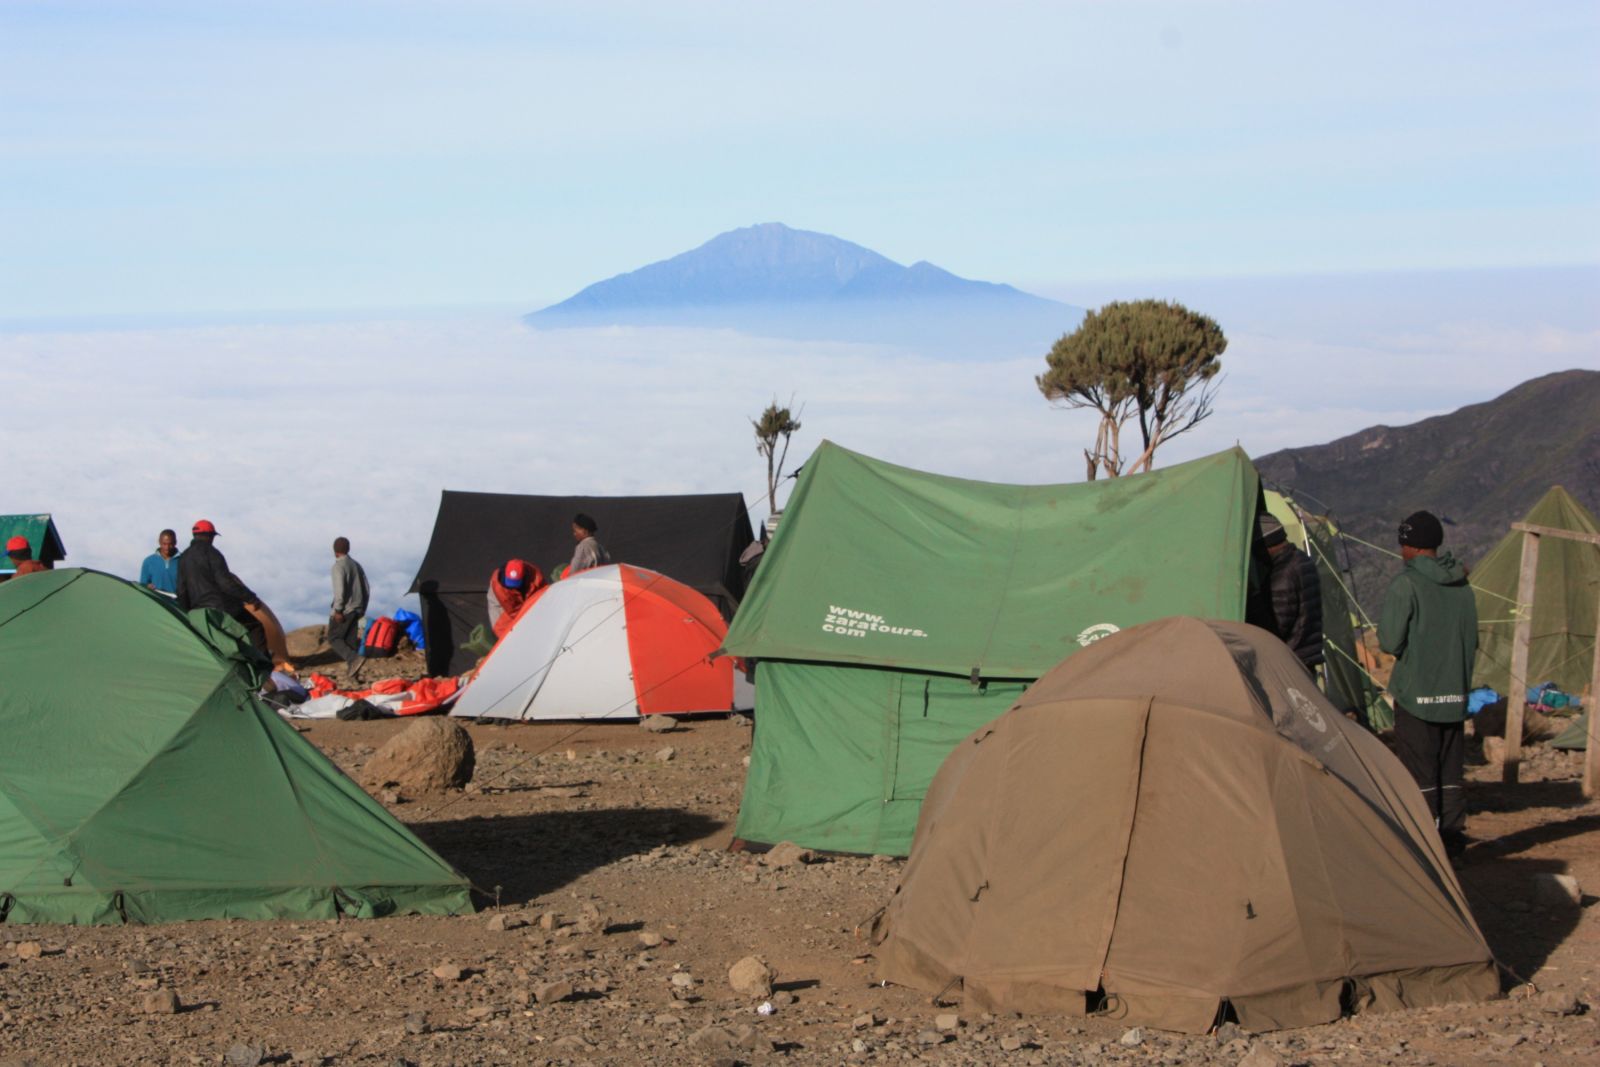 Am Morgen haben wir einen herrlichen Blick vom Shira-Plateau auf den Mount Meru.